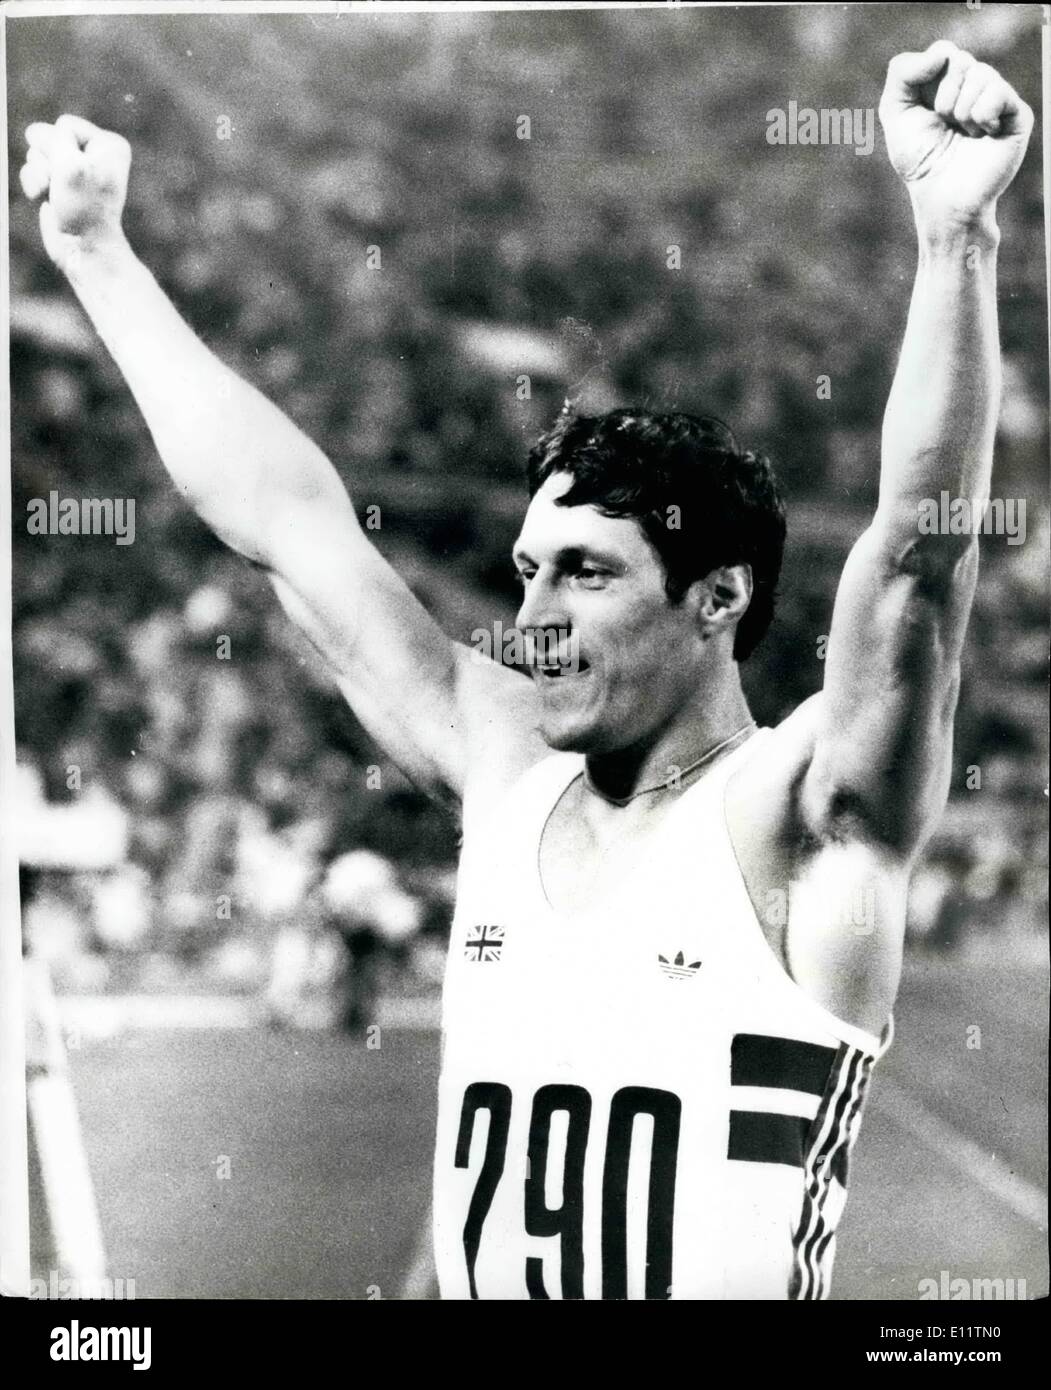 Juillet 07, 1980 - Jeux Olympiques de Moscou : Alan Wells remporte le 100m final. La photo montre Alan bien avec les bras en l'air après avoir remporté la finale du 100 mètres dans le 10.25. Banque D'Images